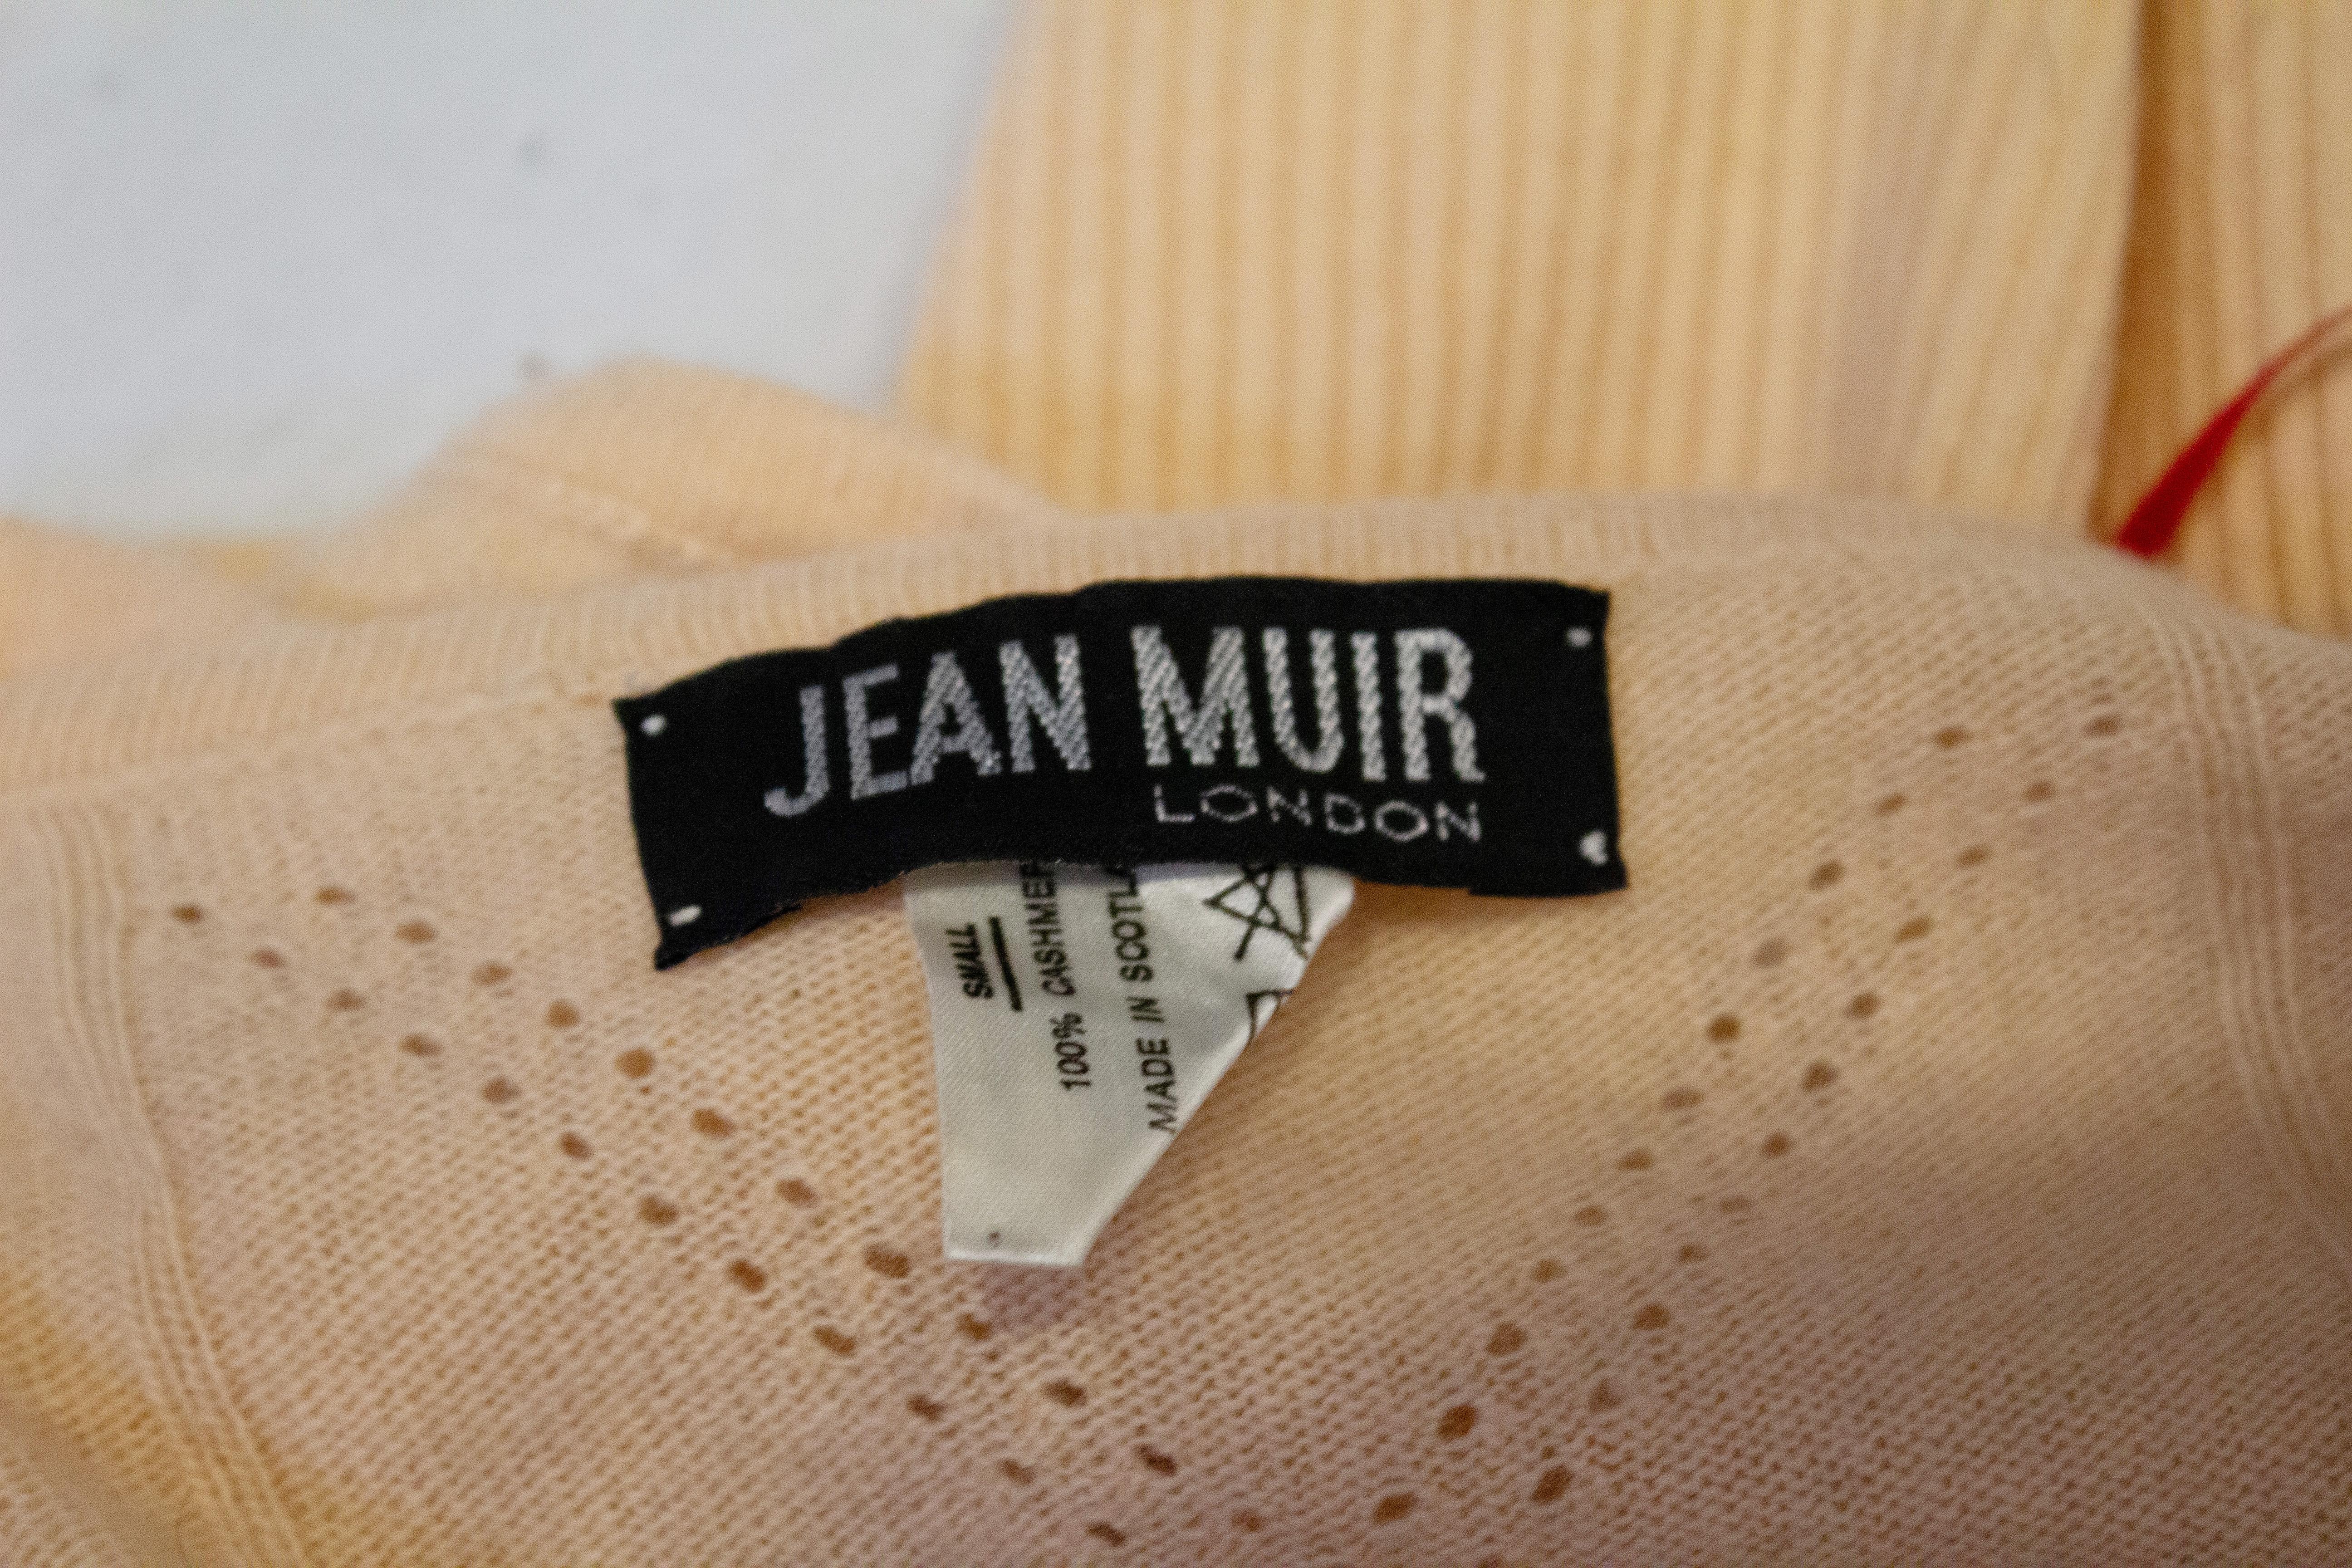 Un pull en cachemire vintage chic et douillet signé Jean Muir. Le pull est d'une jolie couleur abricot doux, avec des manches au coude.
Mesures : Poitrine 34'', longueur 24''